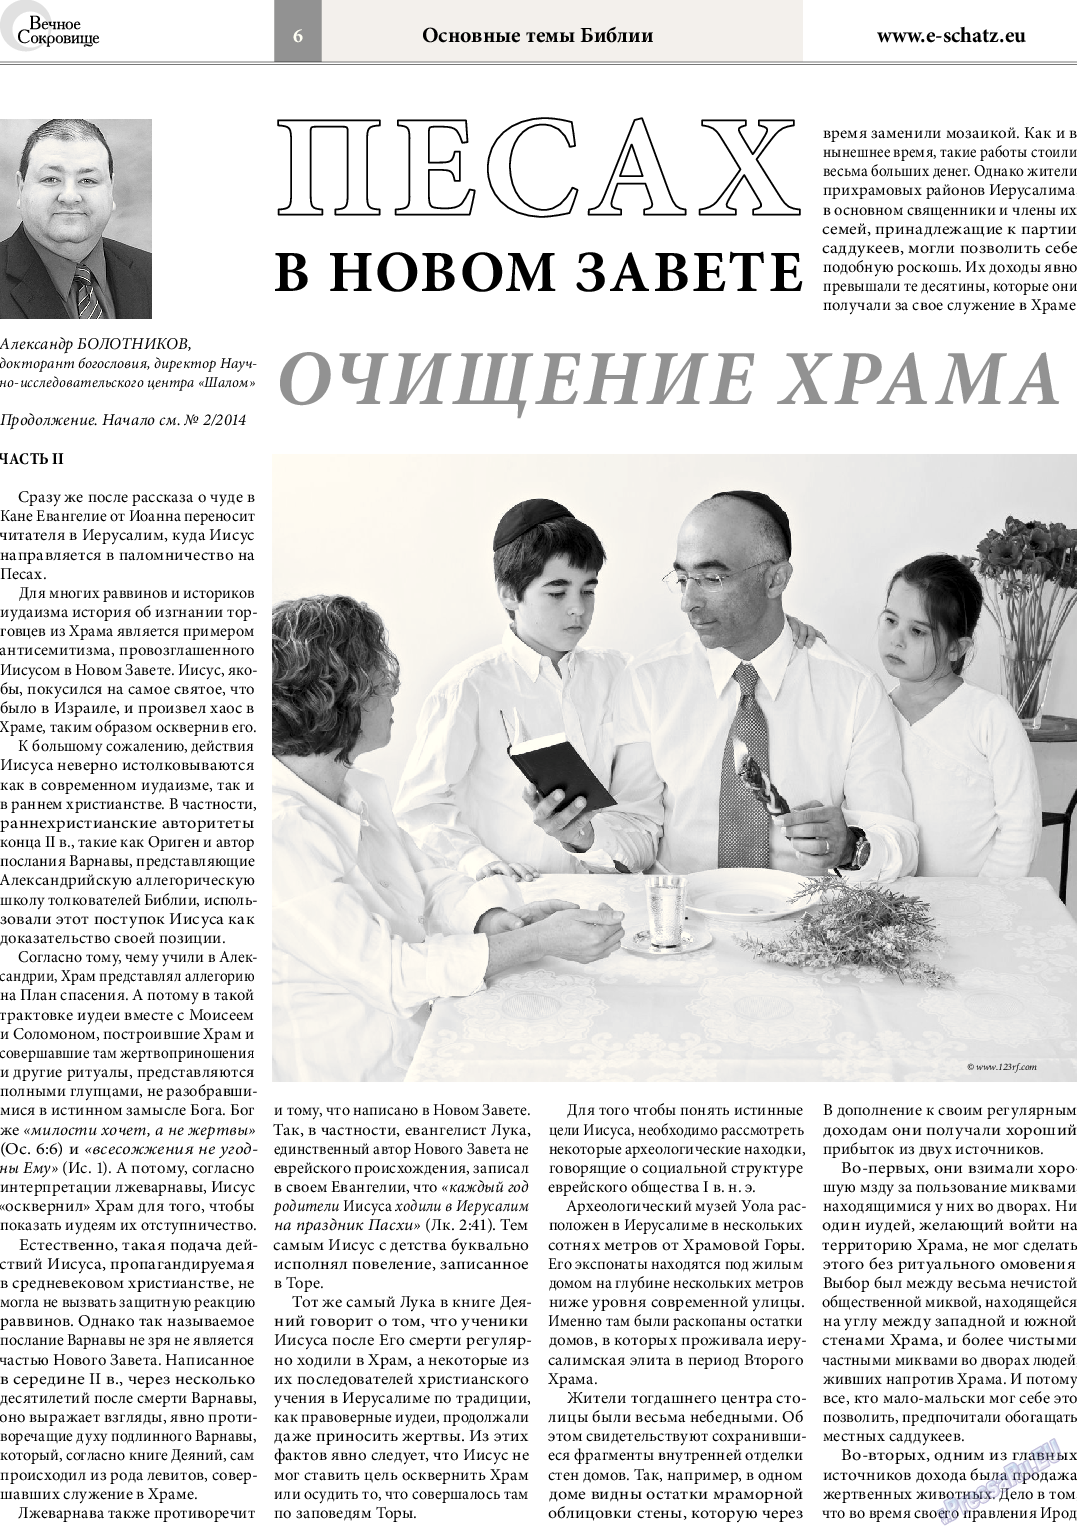 Вечное сокровище, газета. 2014 №3 стр.6